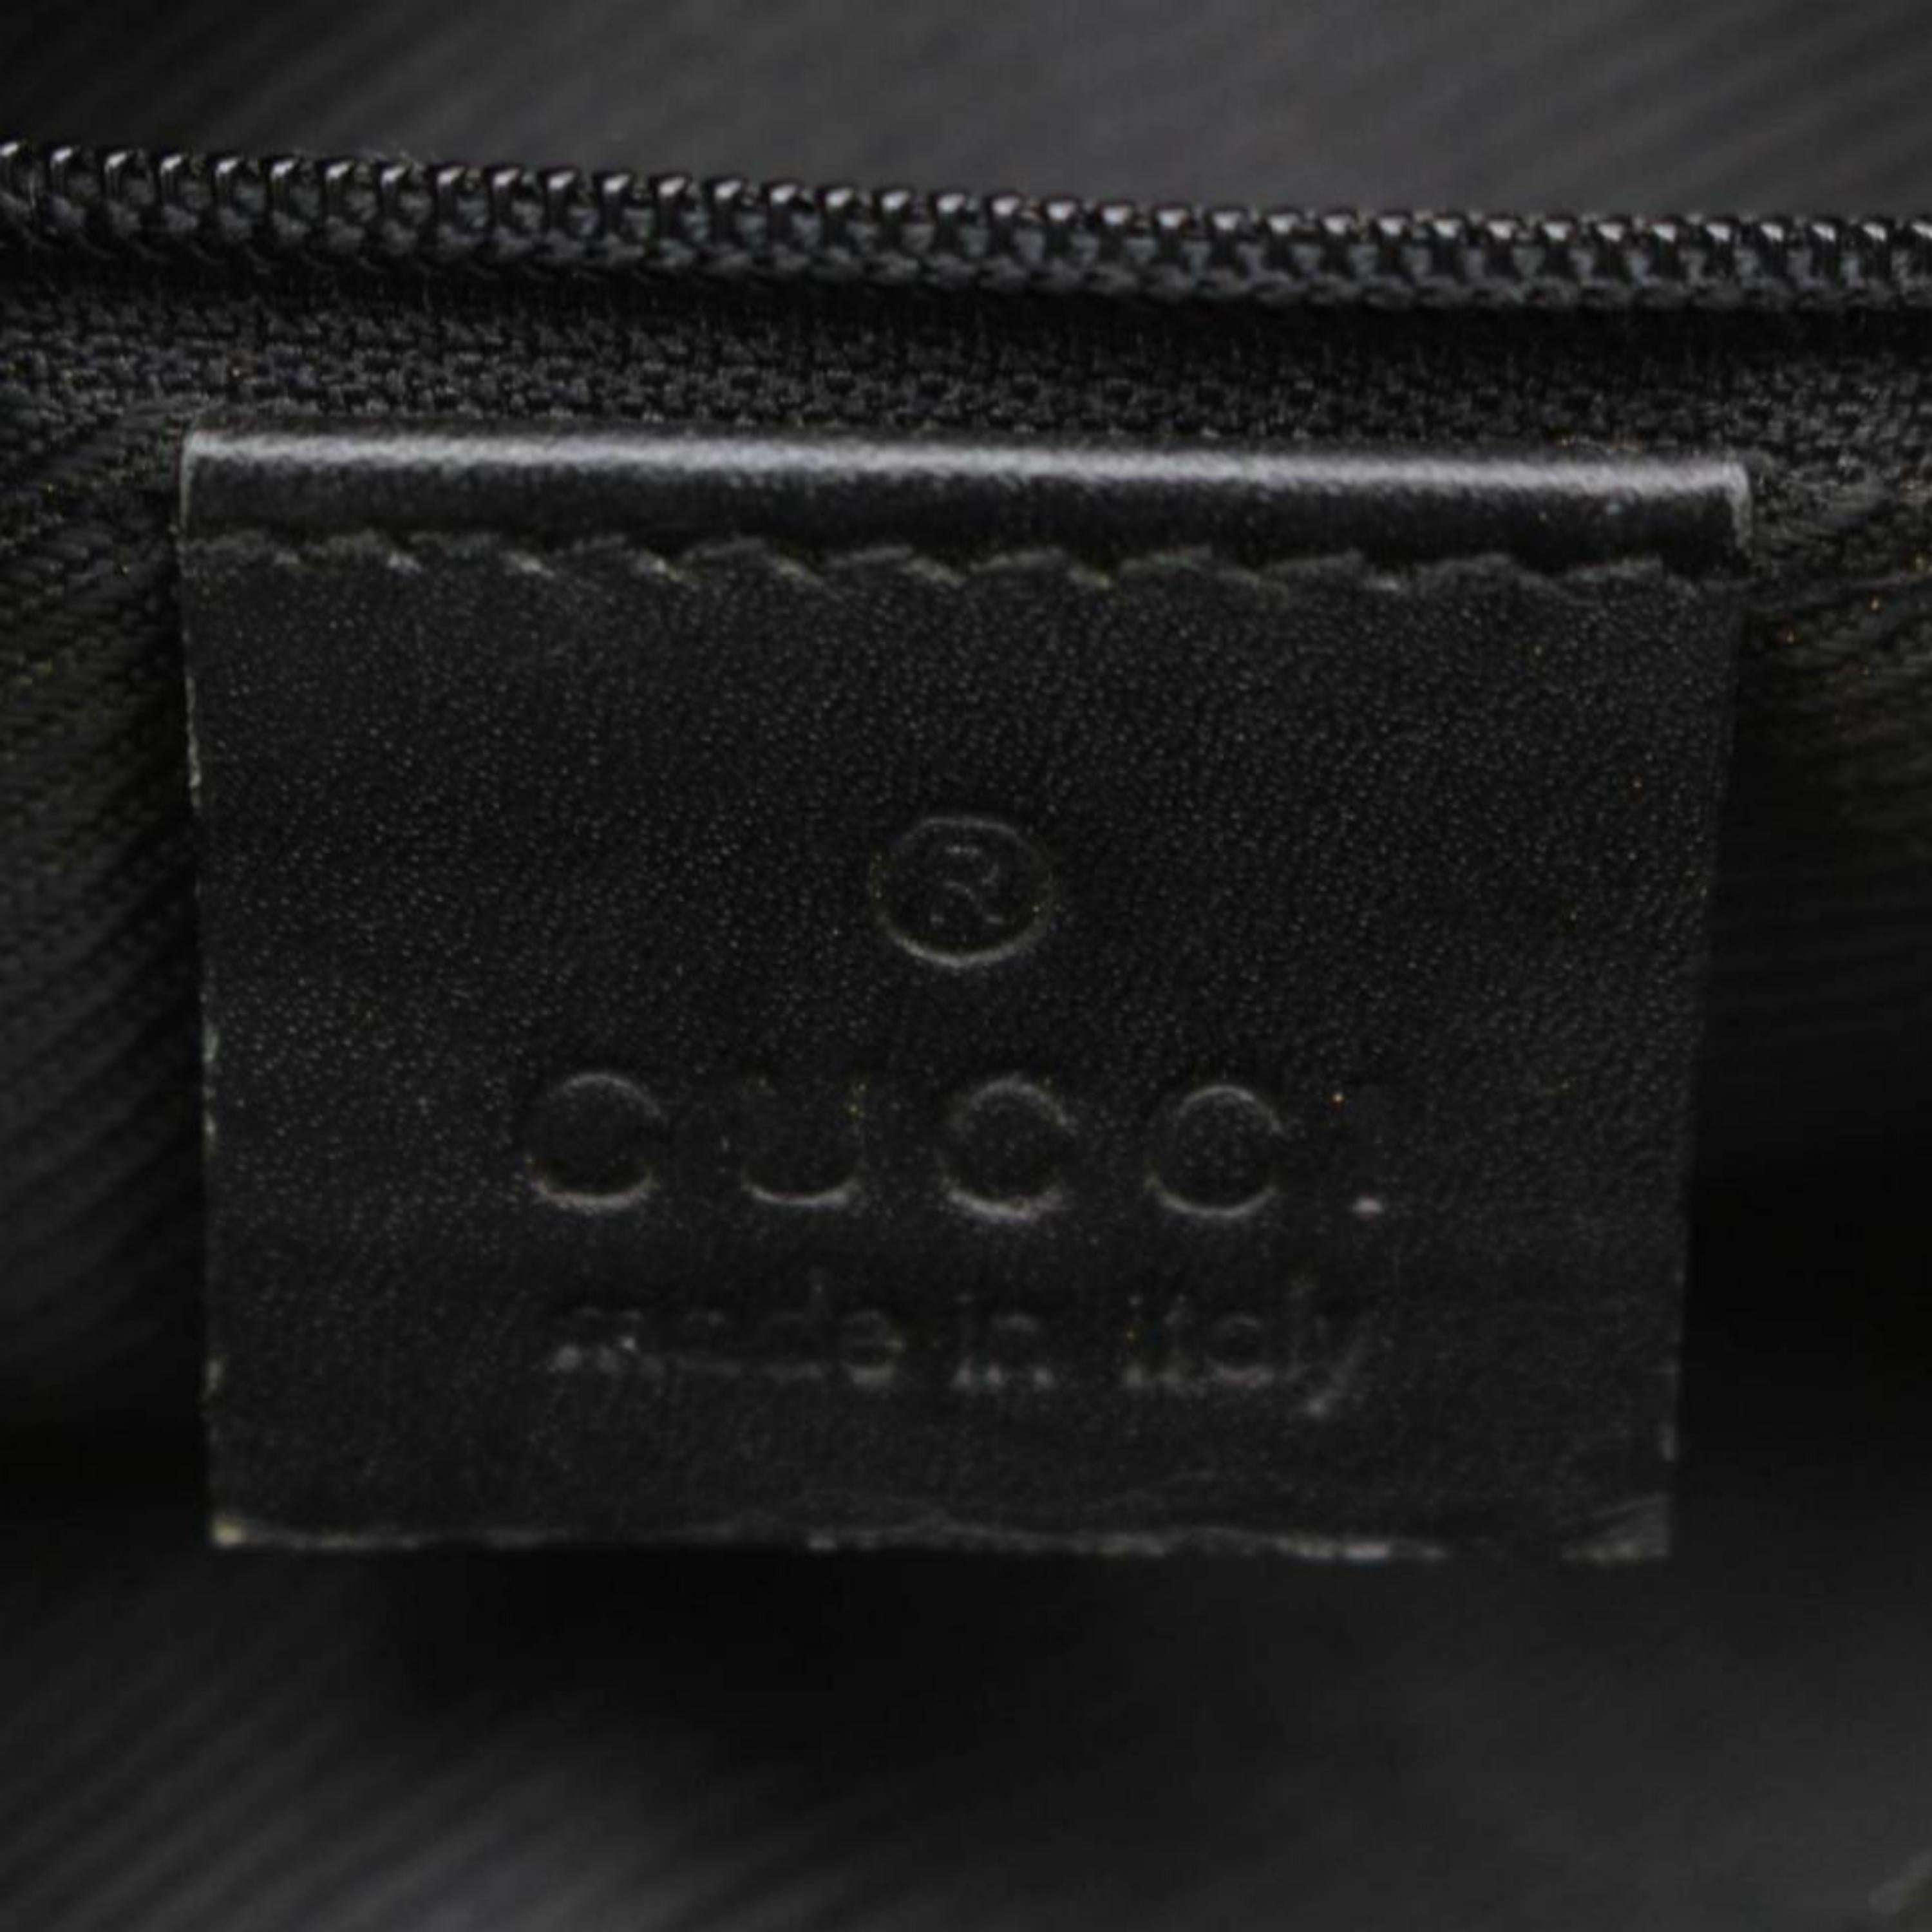 Women's Gucci Monogram Gg Belt Fanny Pack Waist Pouch 869344 Black Canvas Shoulder Bag For Sale